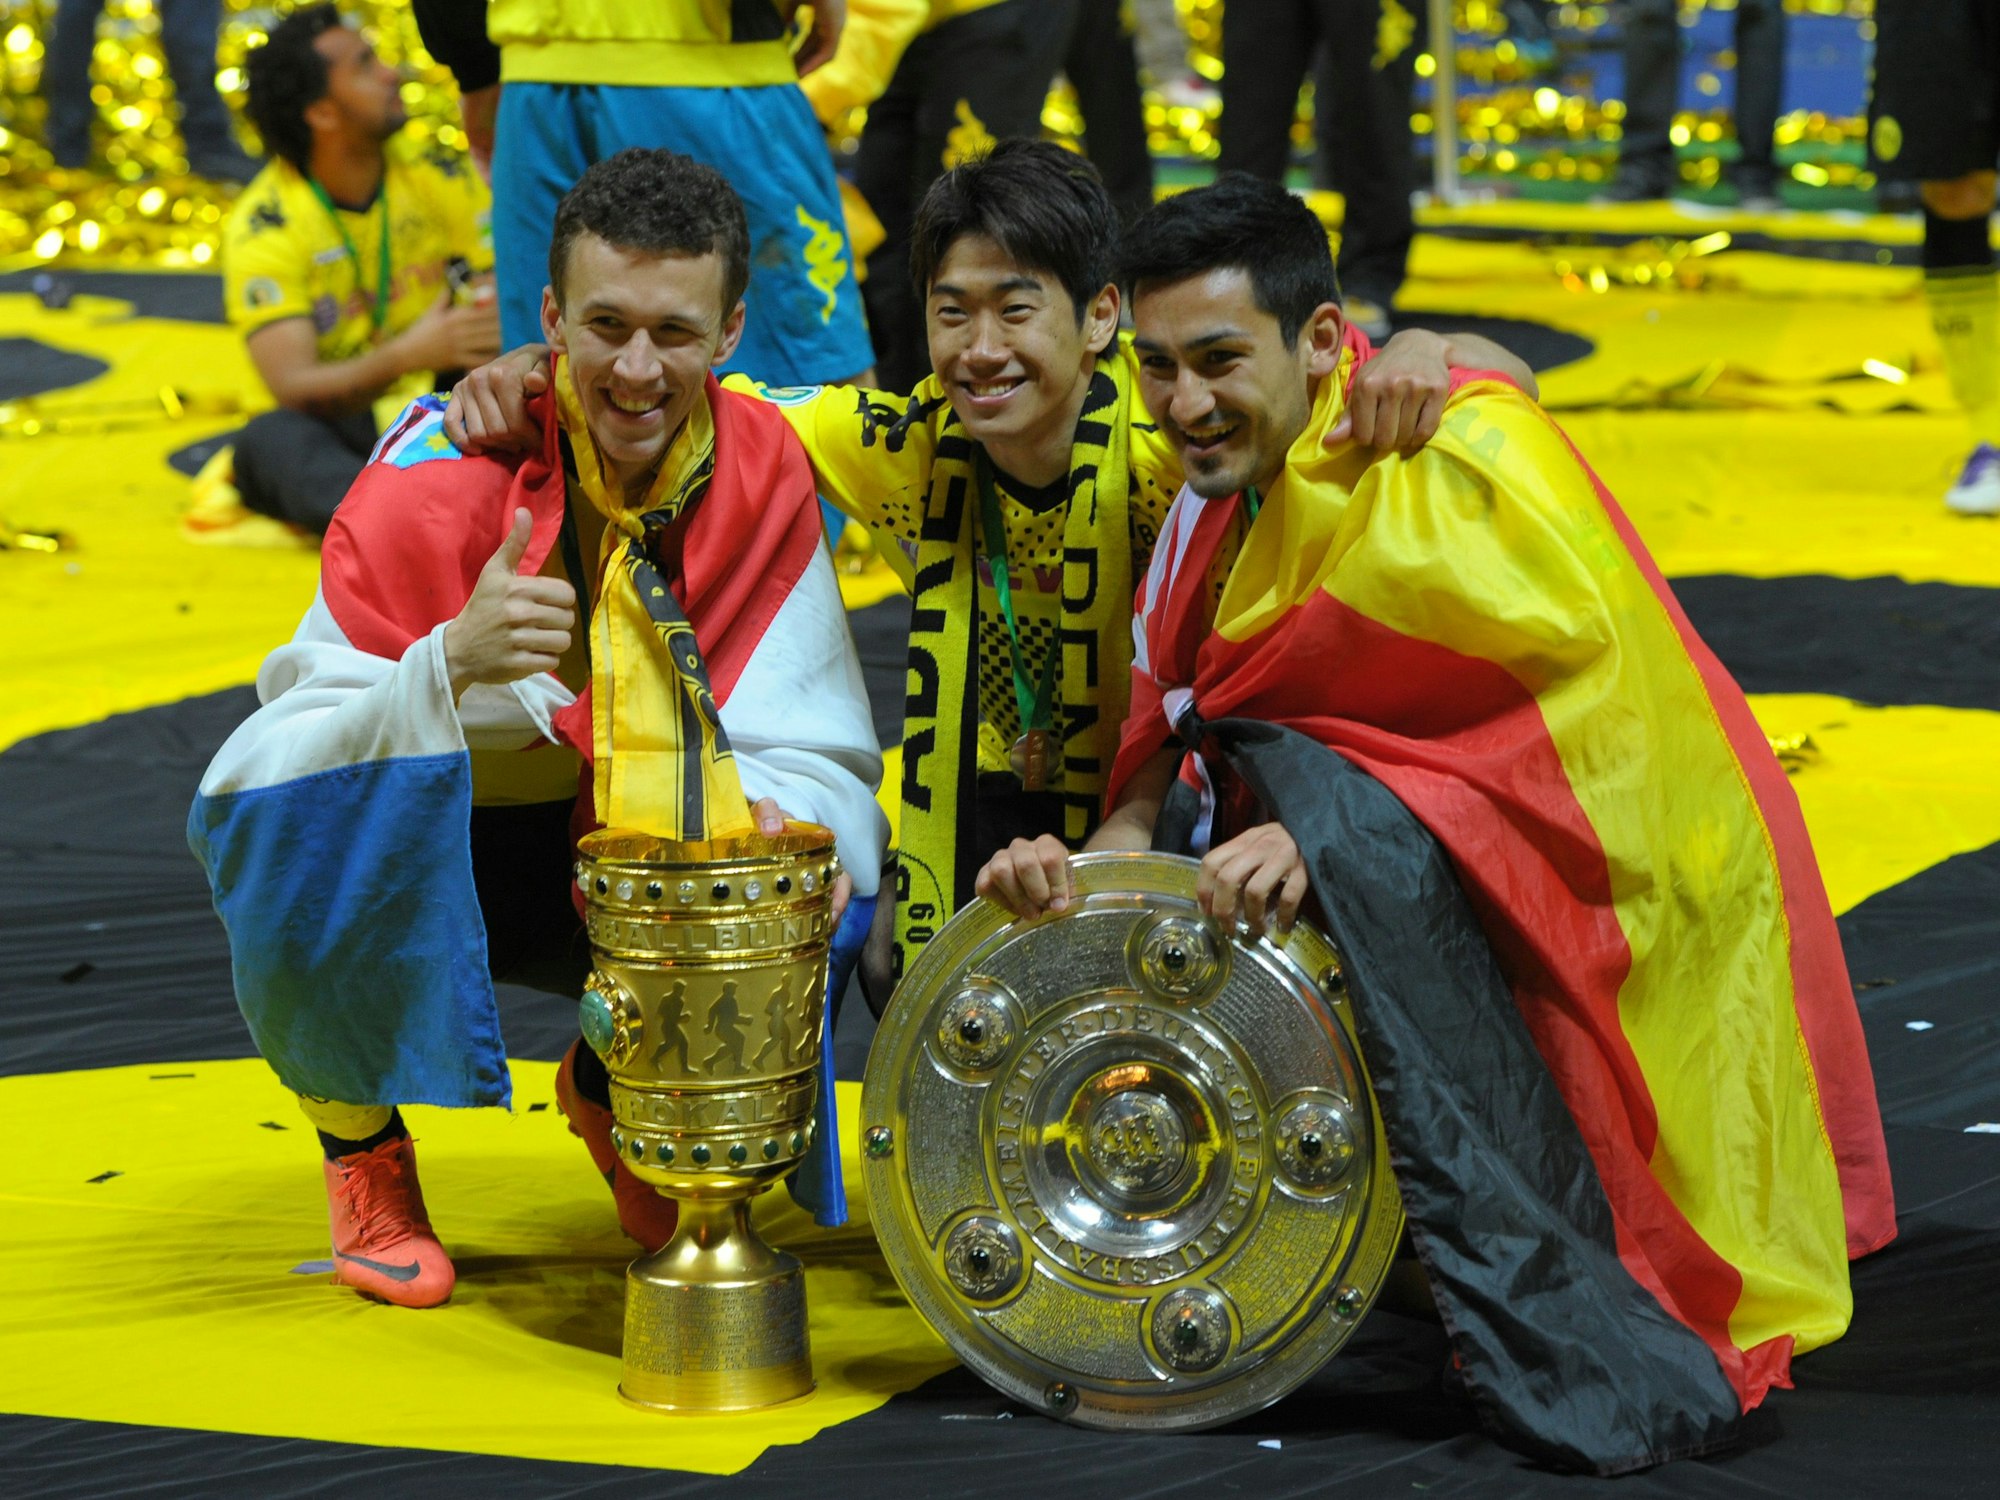 Ivan Perisic, Shinji Kagawa und Ilkay Gündogan posieren hockend mit dem Pokal und der Meisterschale.Perisic ist in einem Kroatien-Flagge gehüllt, Gündogan in eine Deutschland-Fahne.